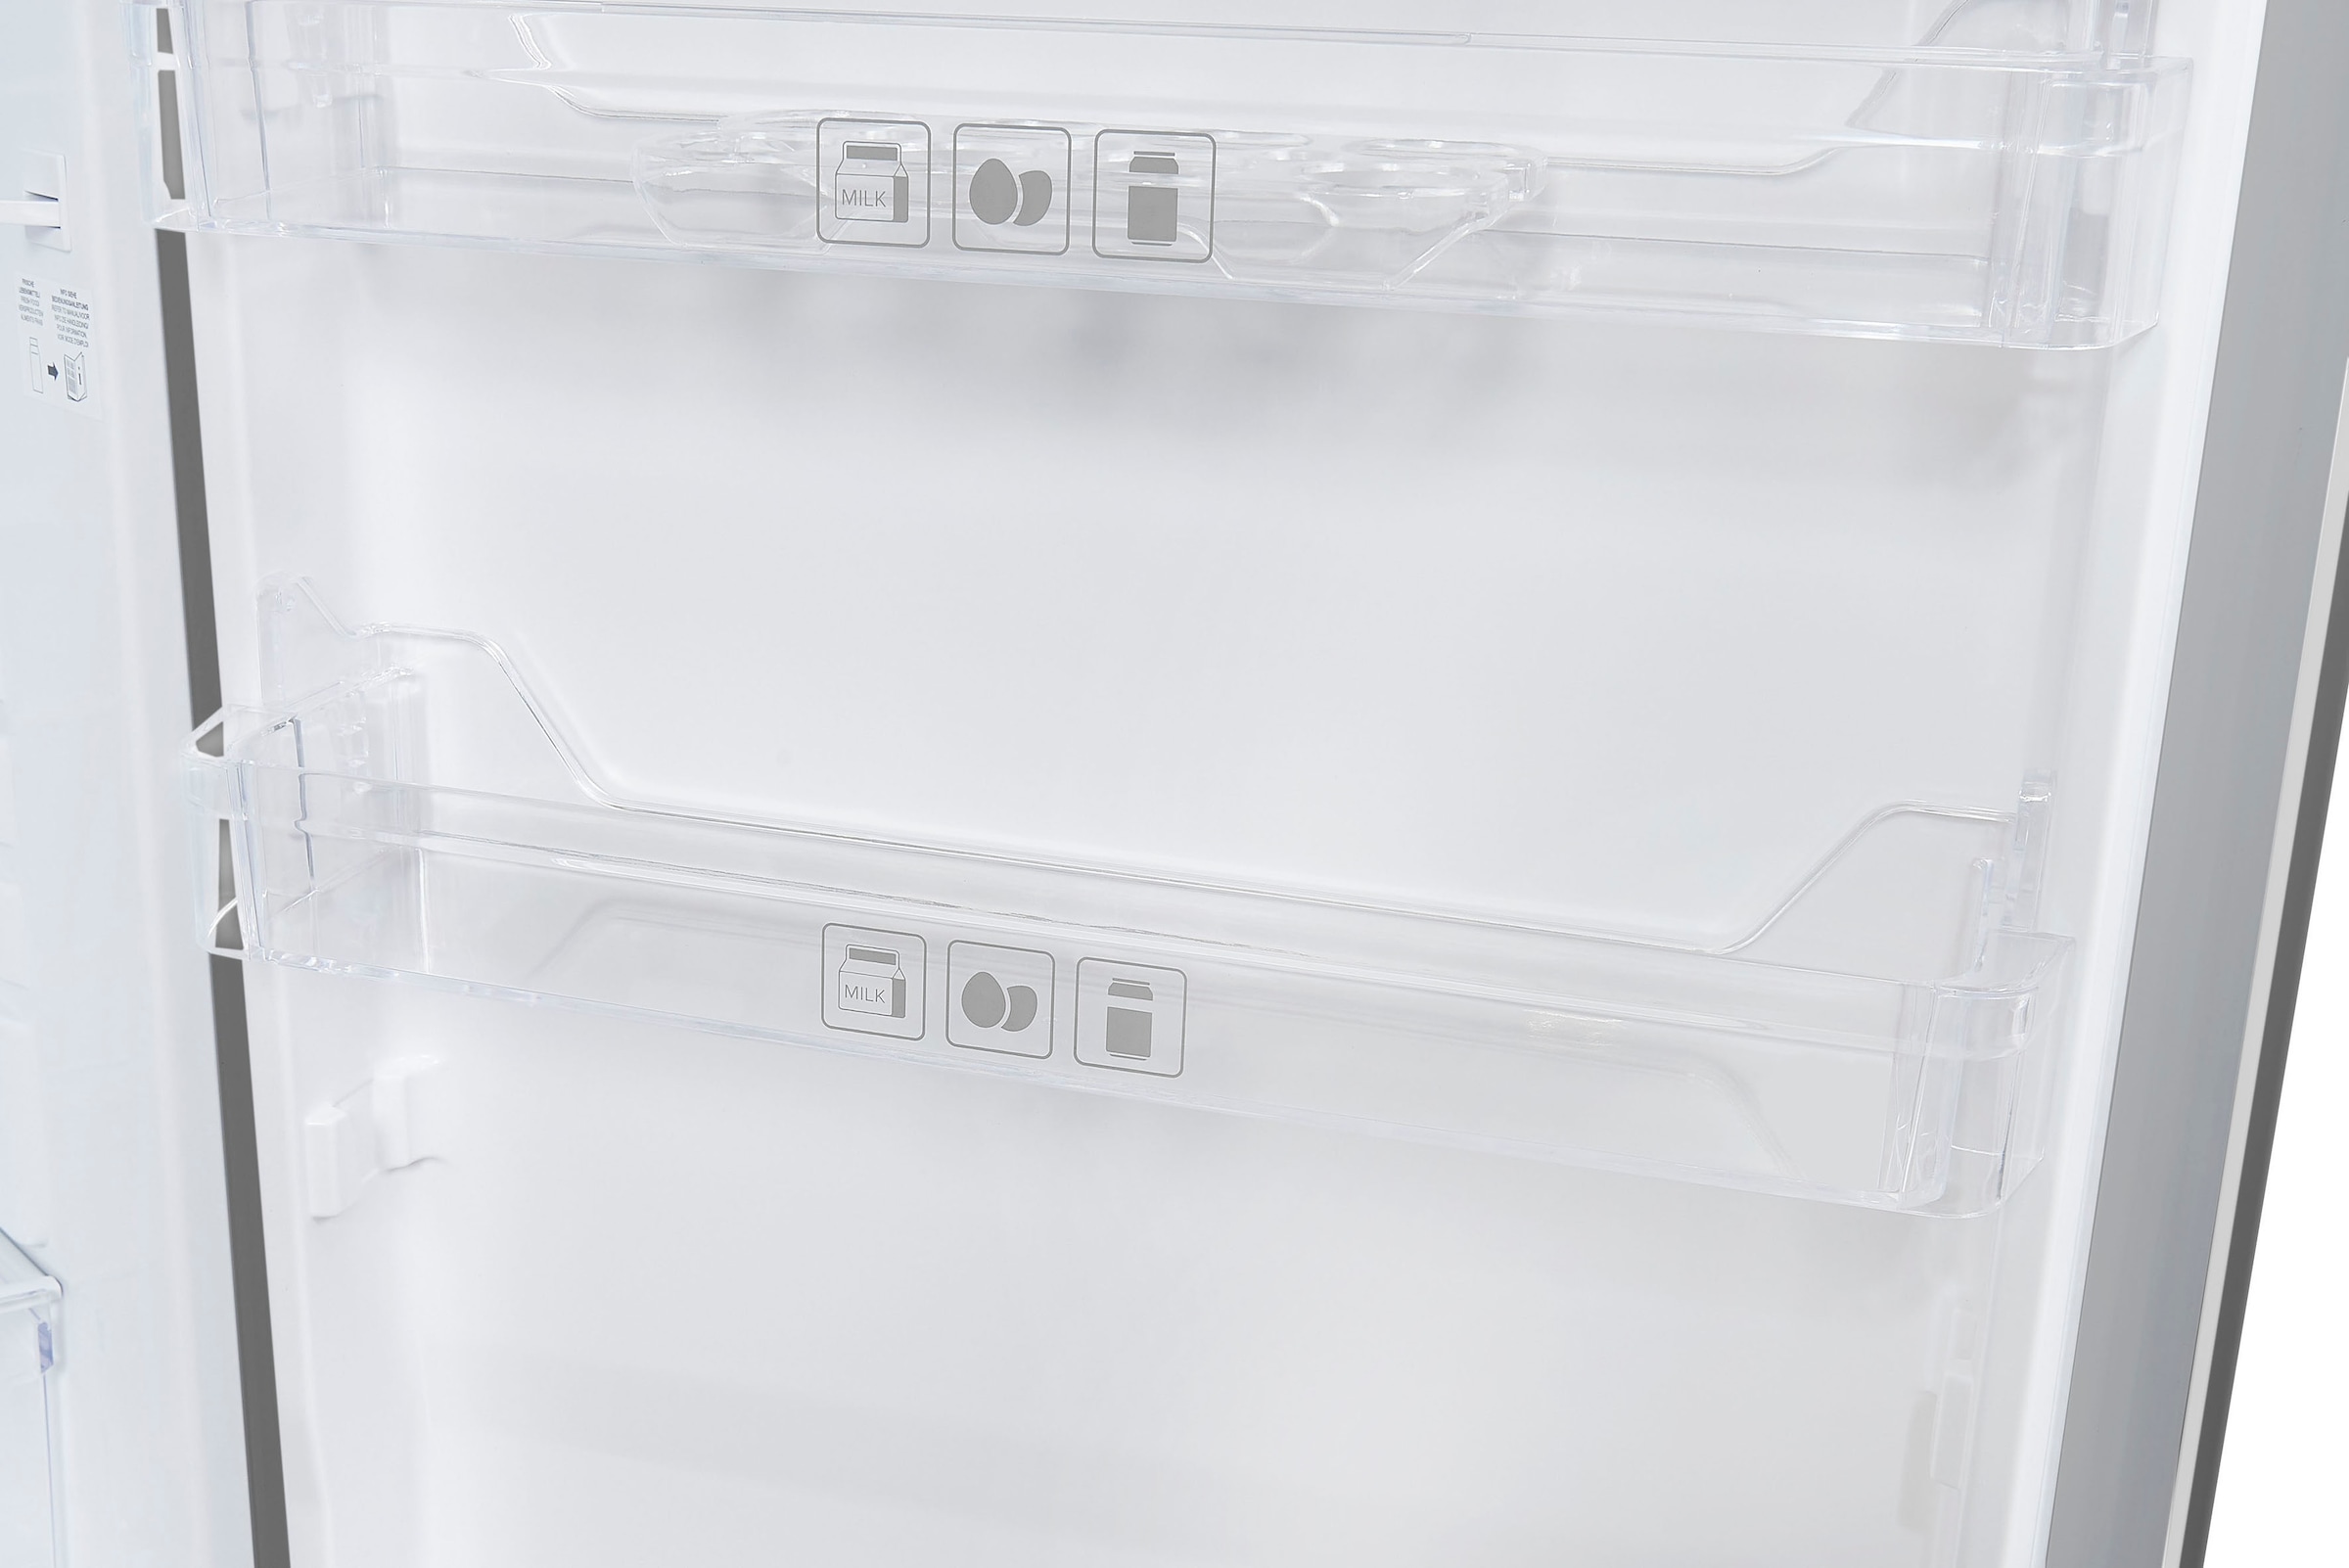 Exquisit Kühlschrank mit Gefrierfach 109L Nutzinhalt Weiß freistehend 55cm  breit, freistehende Kühlschränke, Kühlschrank, Kühlen & Gefrieren